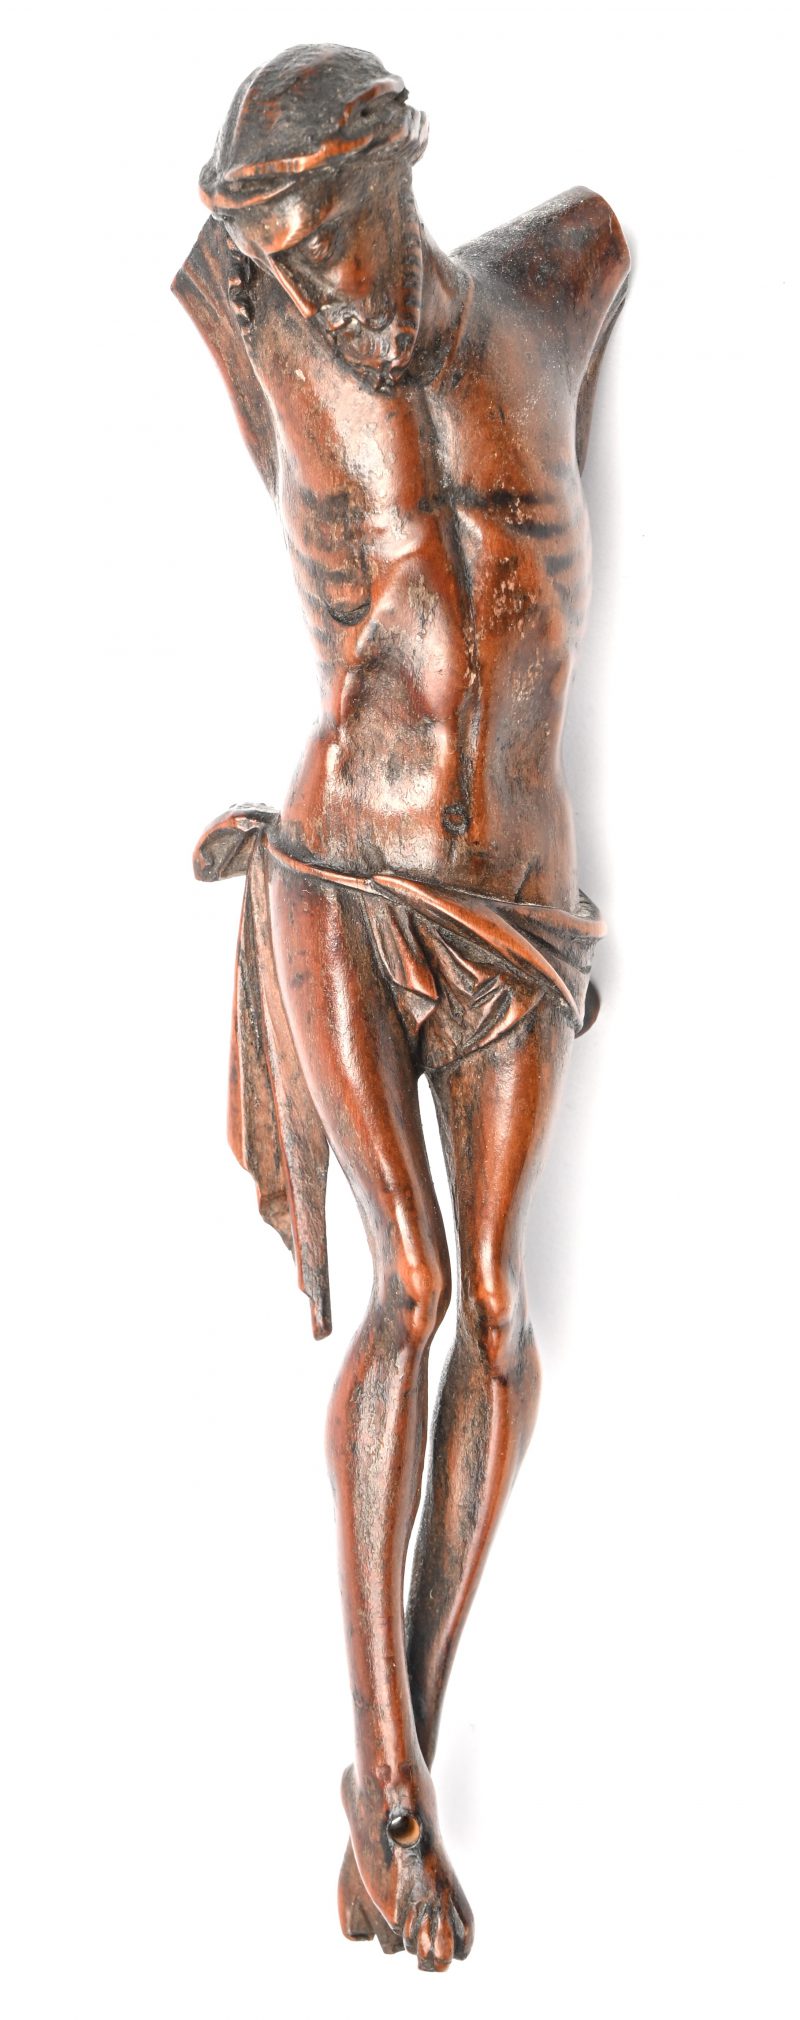 Een uit perenhout gesculpteerd Corpus Christi beeldje. Armen manco. Eind 17e - begin 18e eeuw. Afkomst antiquair Maes Roger, Antwerpen